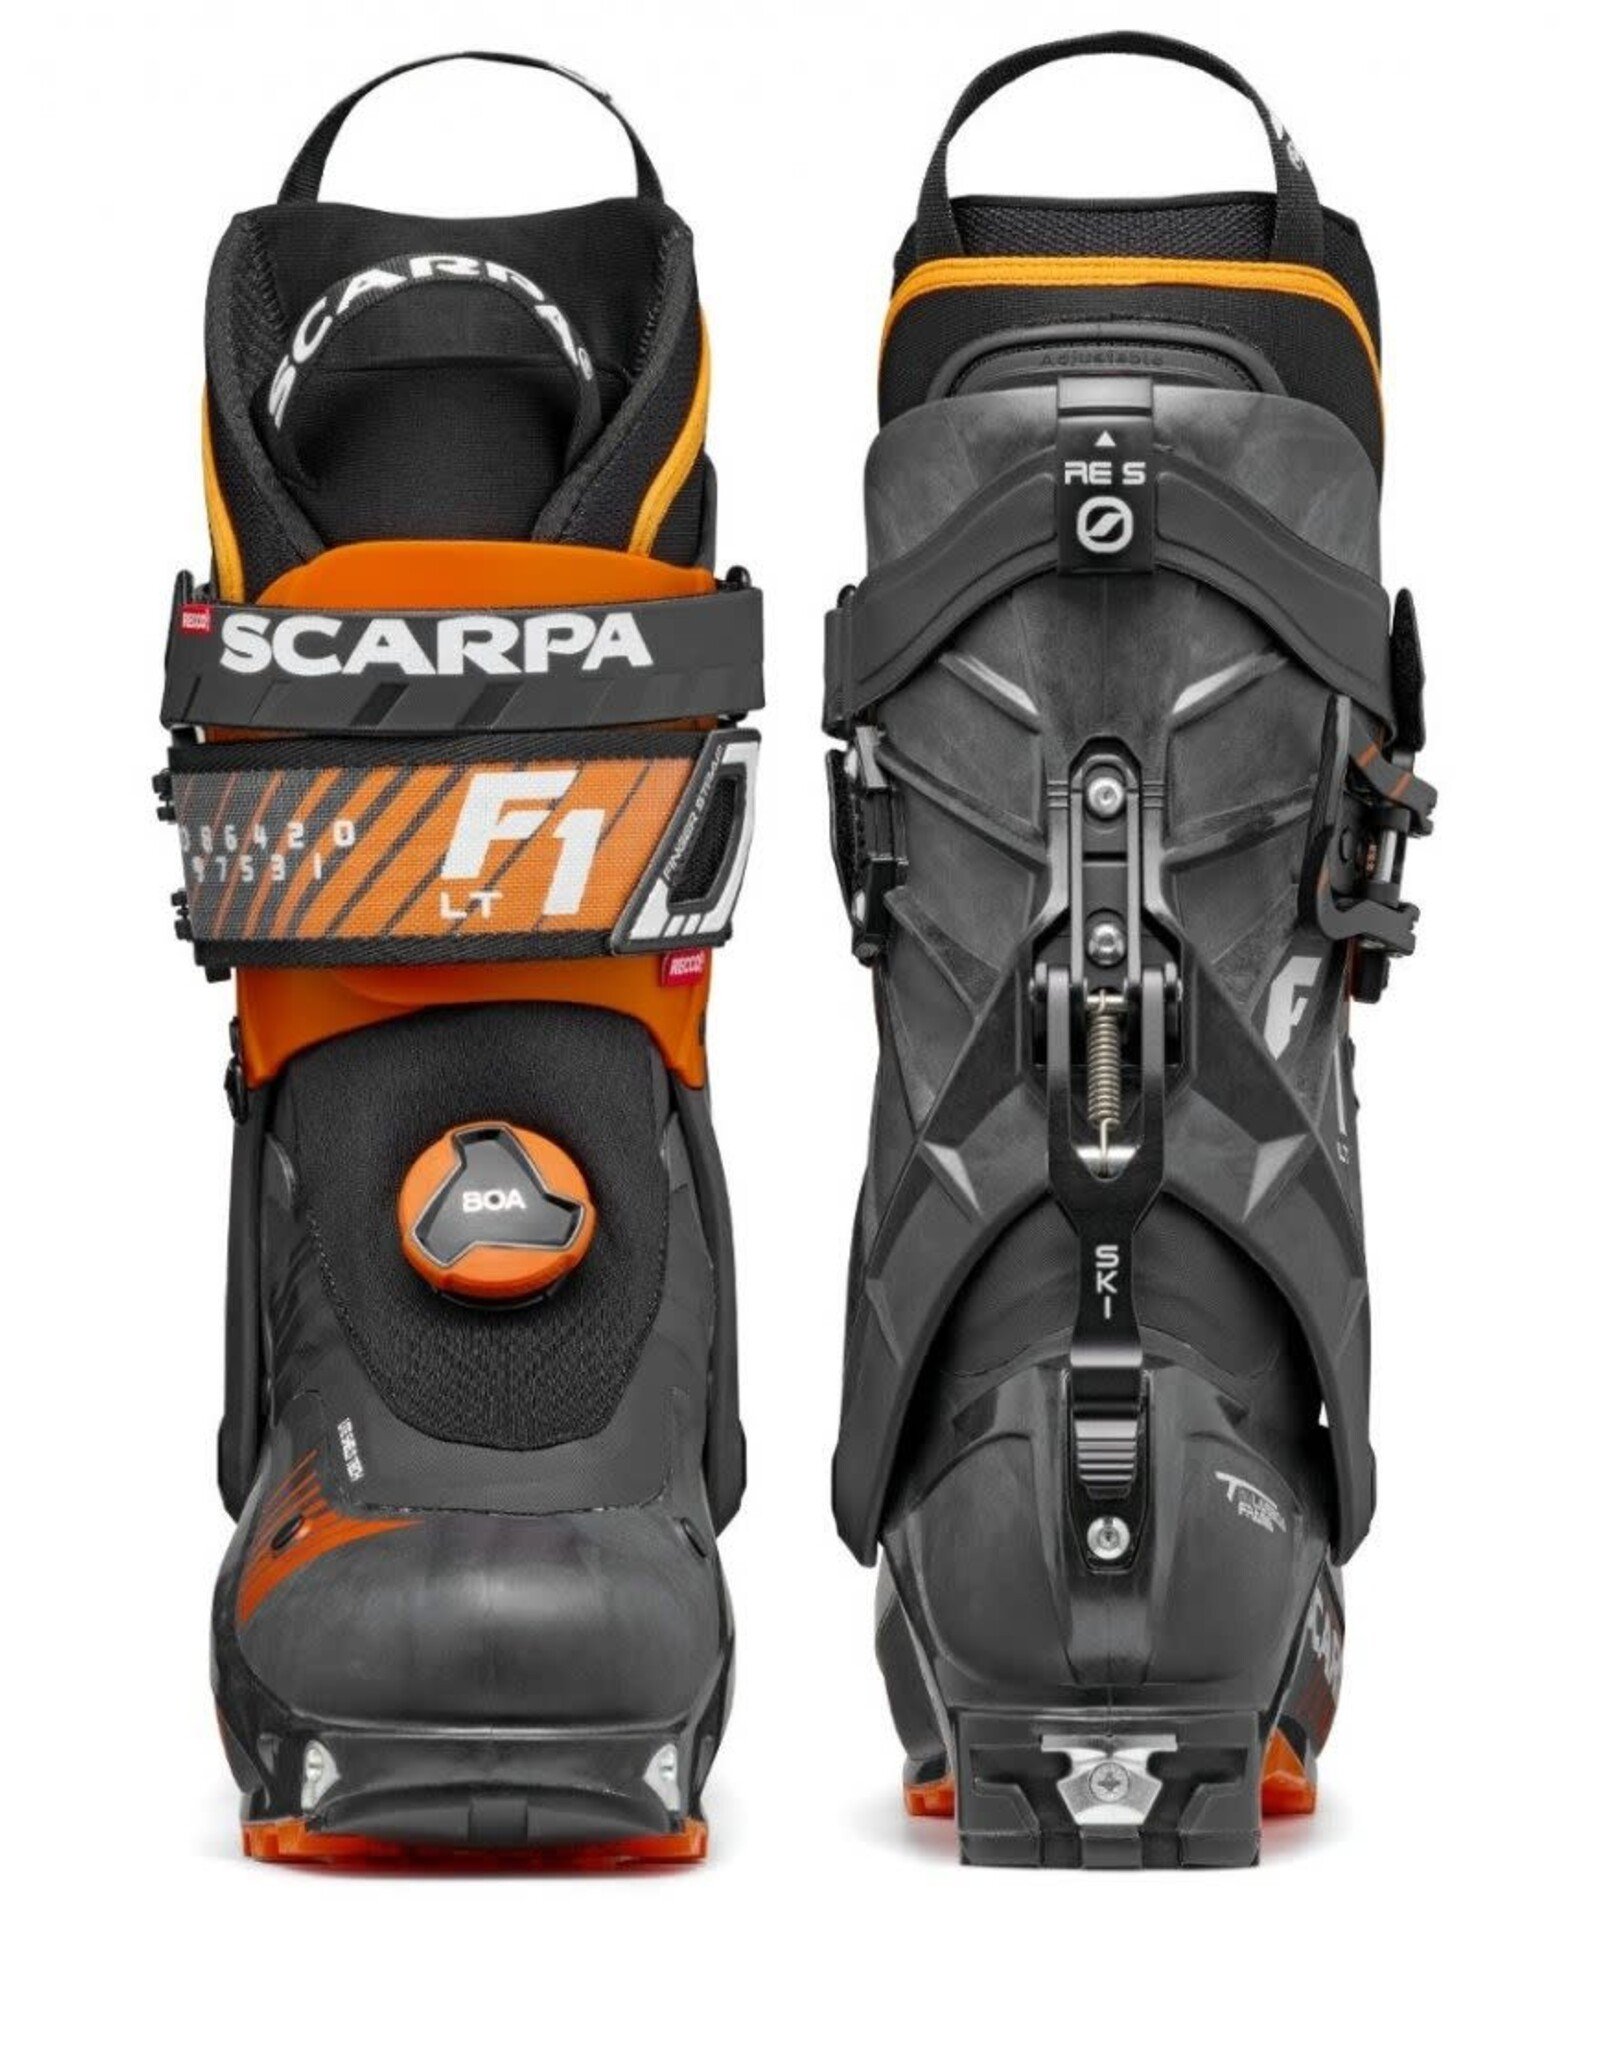 Scarpa F1 LT AT Ski Boots